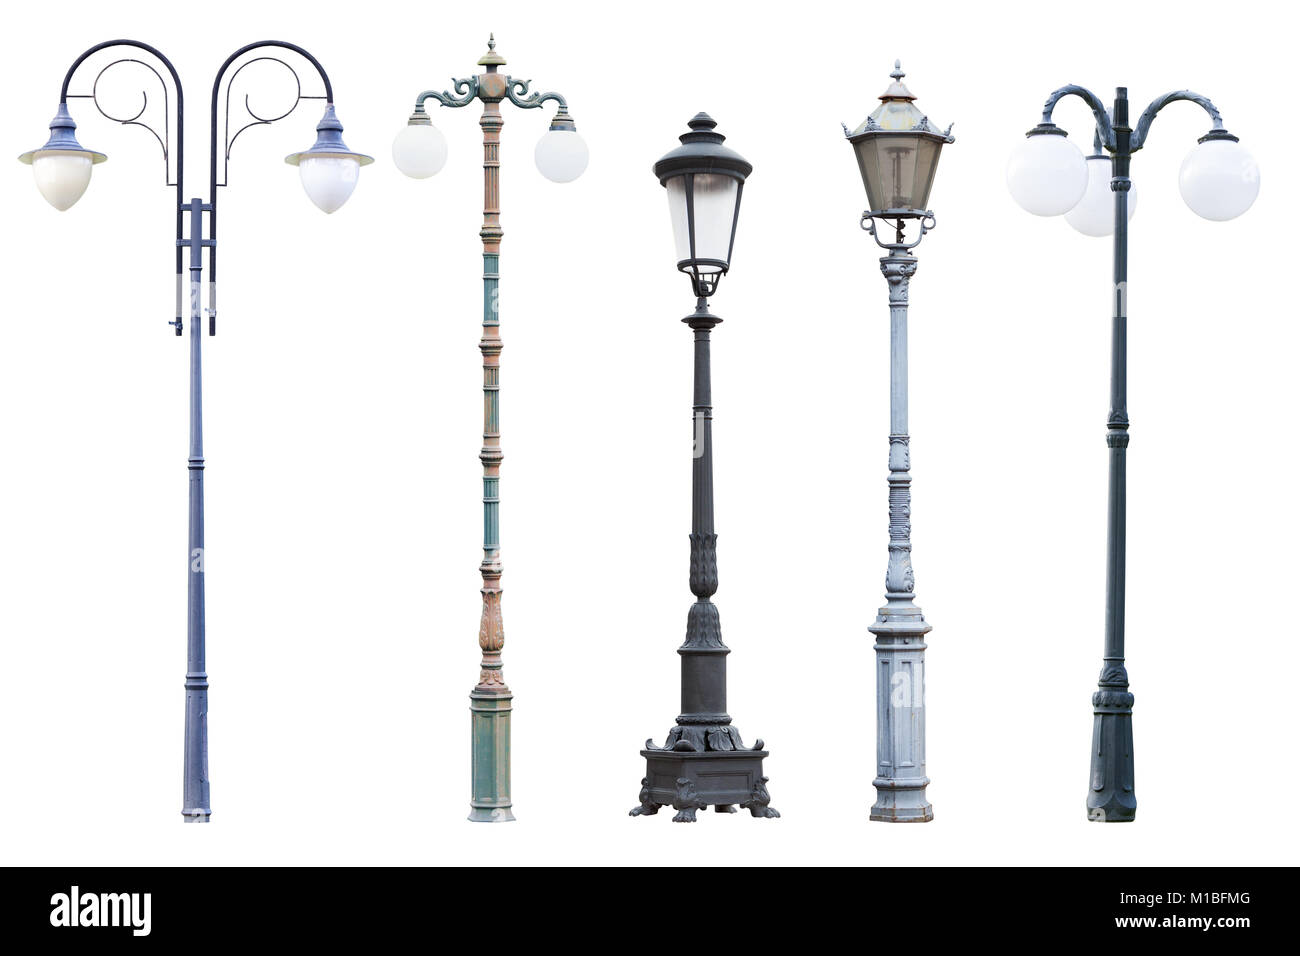 Real Vintage street lampioni e lanterne, set di cinque lampada da esterni posti isolati su sfondo bianco Foto Stock